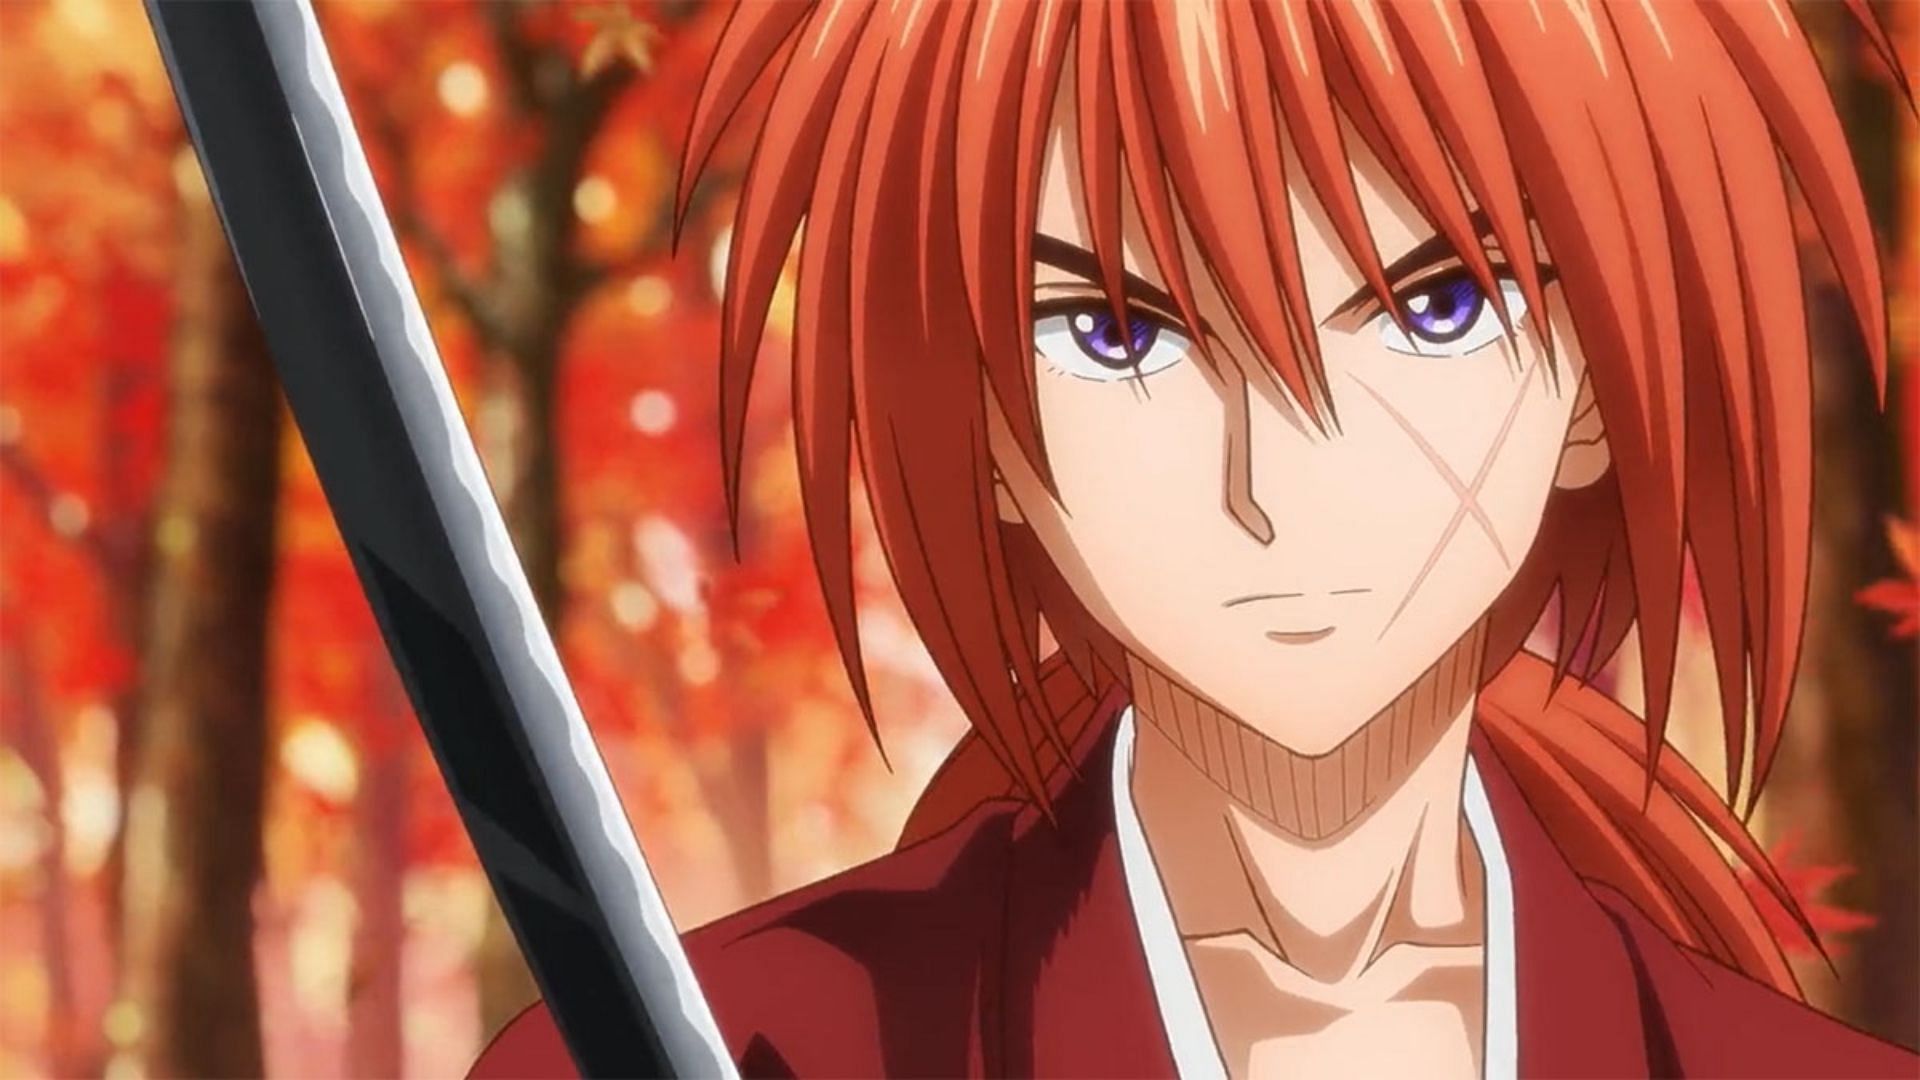 Himura Kenshin from Rurouni Kenshin (Image via Nobuhiro Watsuki)